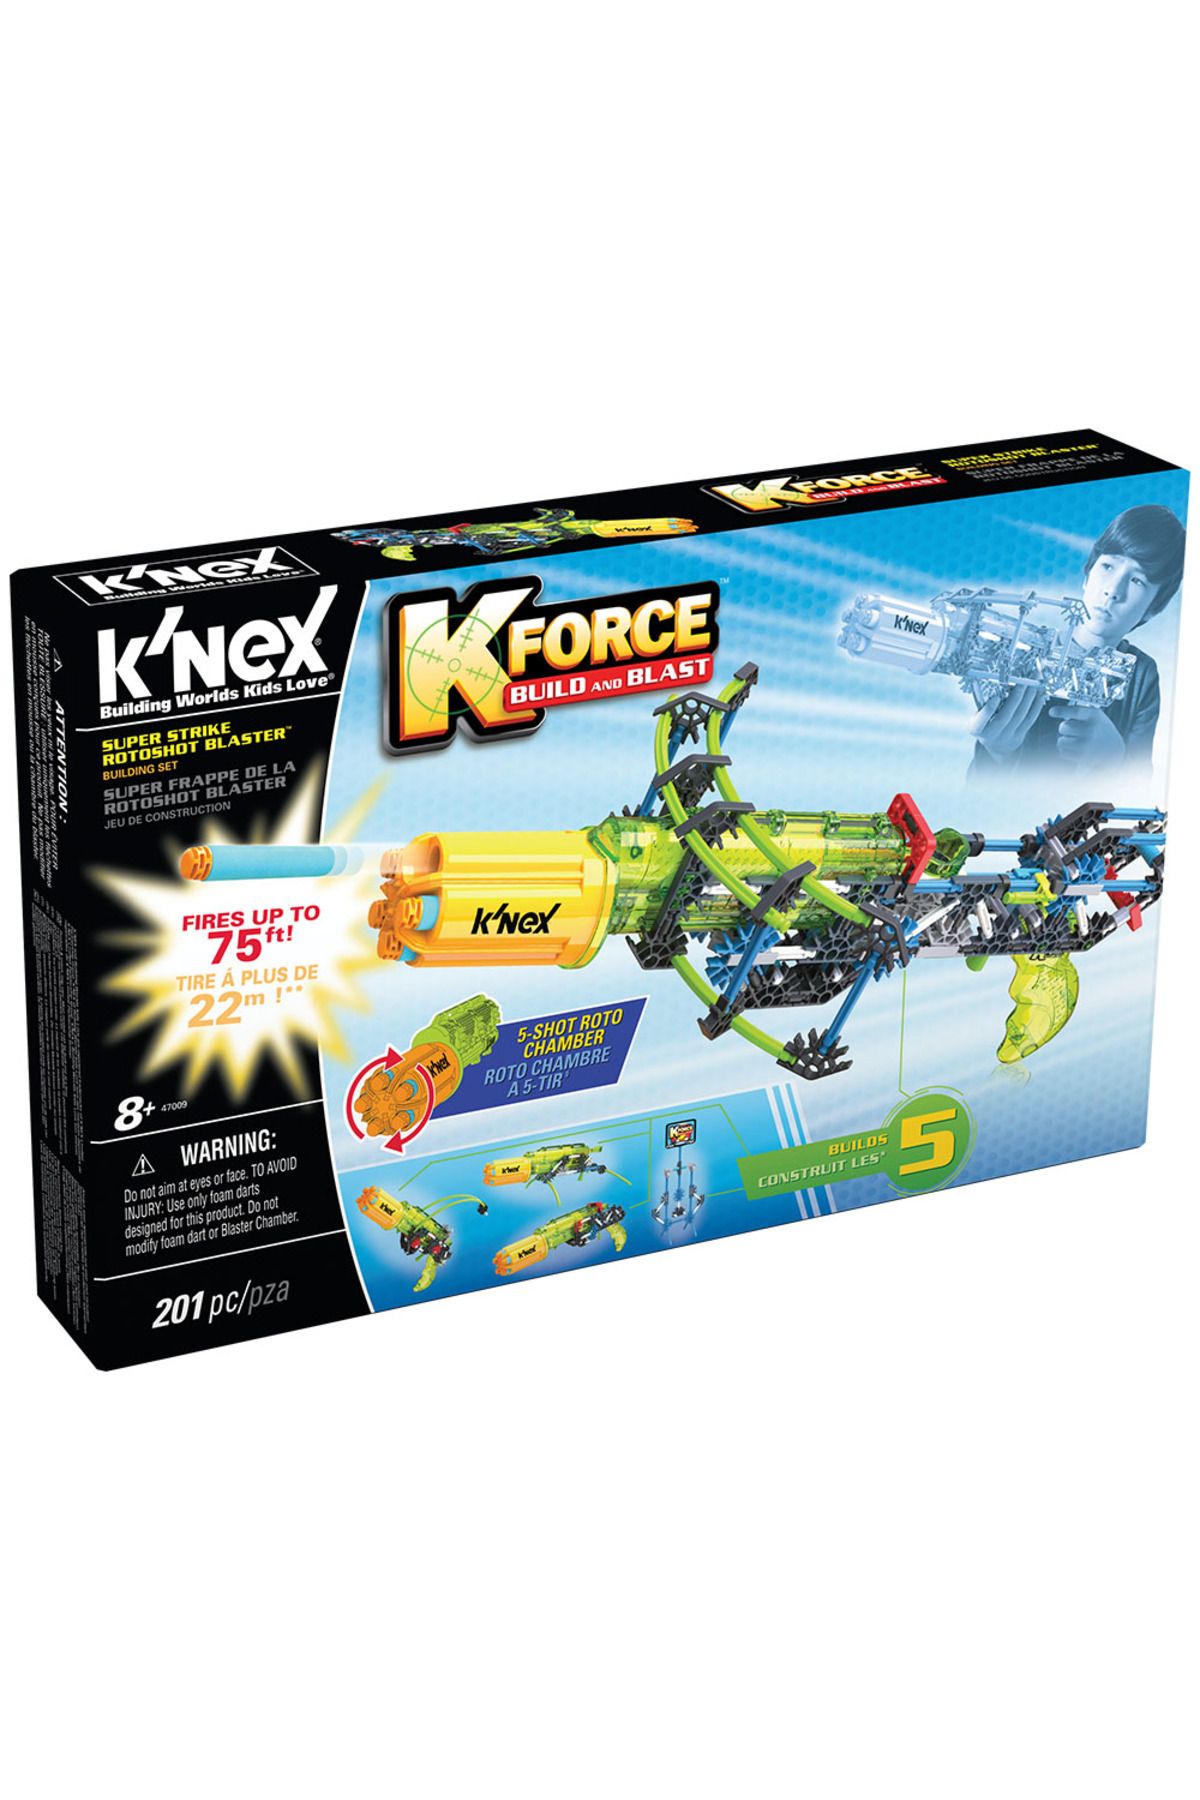 Knex K-force Super Strike Rotoshot Blaster Yapı Seti Knex 47009